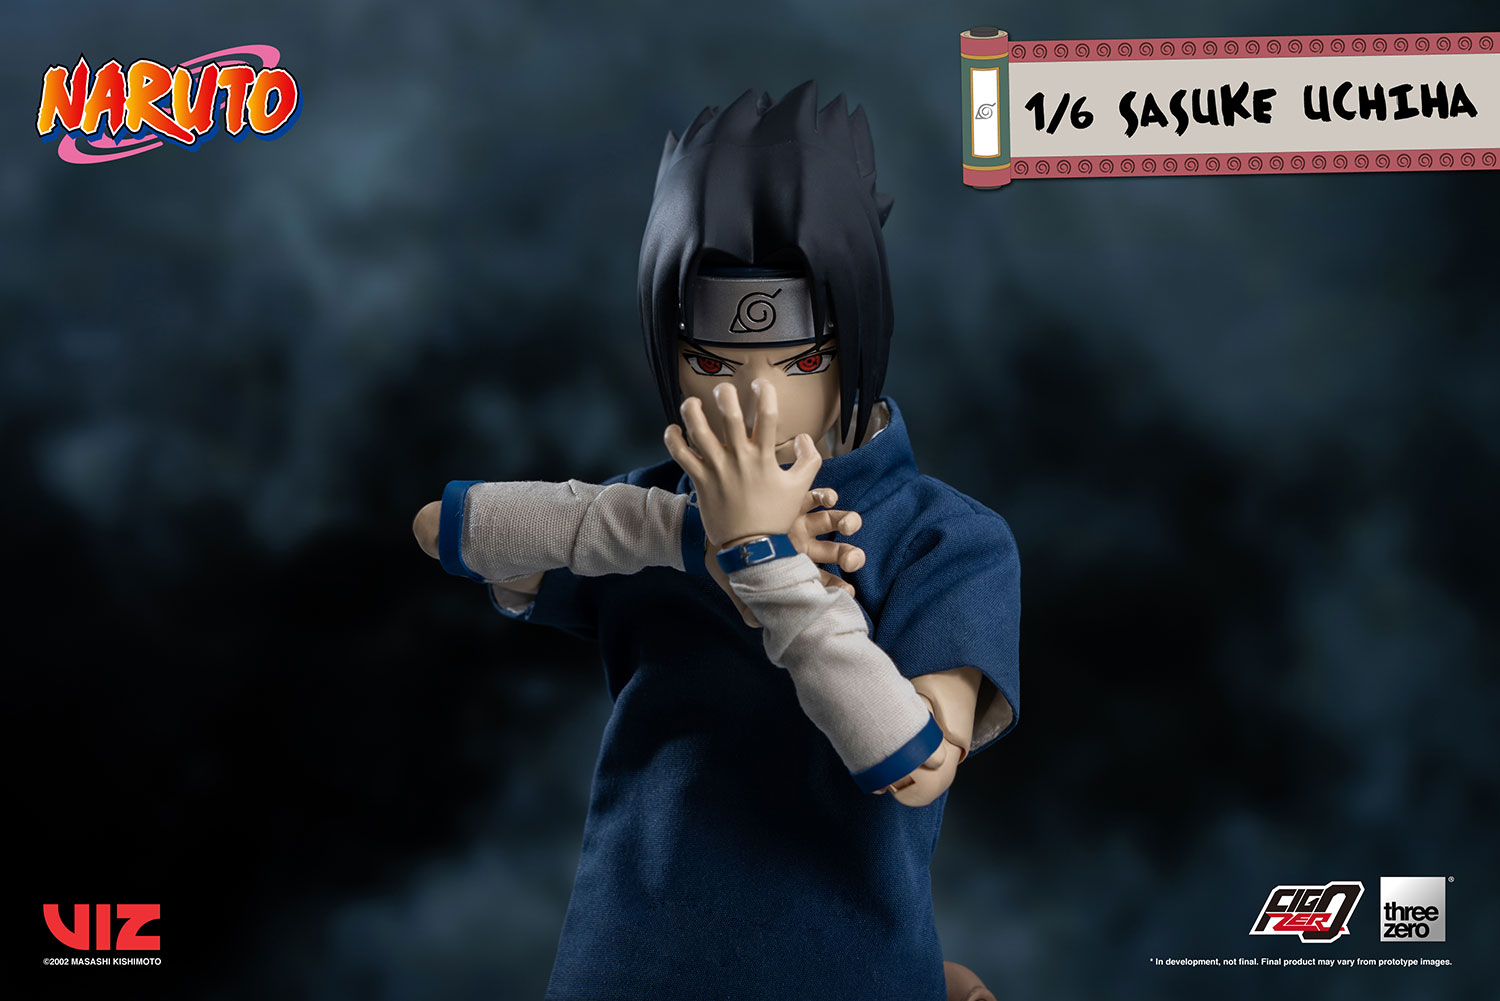 Uchiha Sasuke - Naruto  Sasuke uchiha, Uchiha, Sasuke